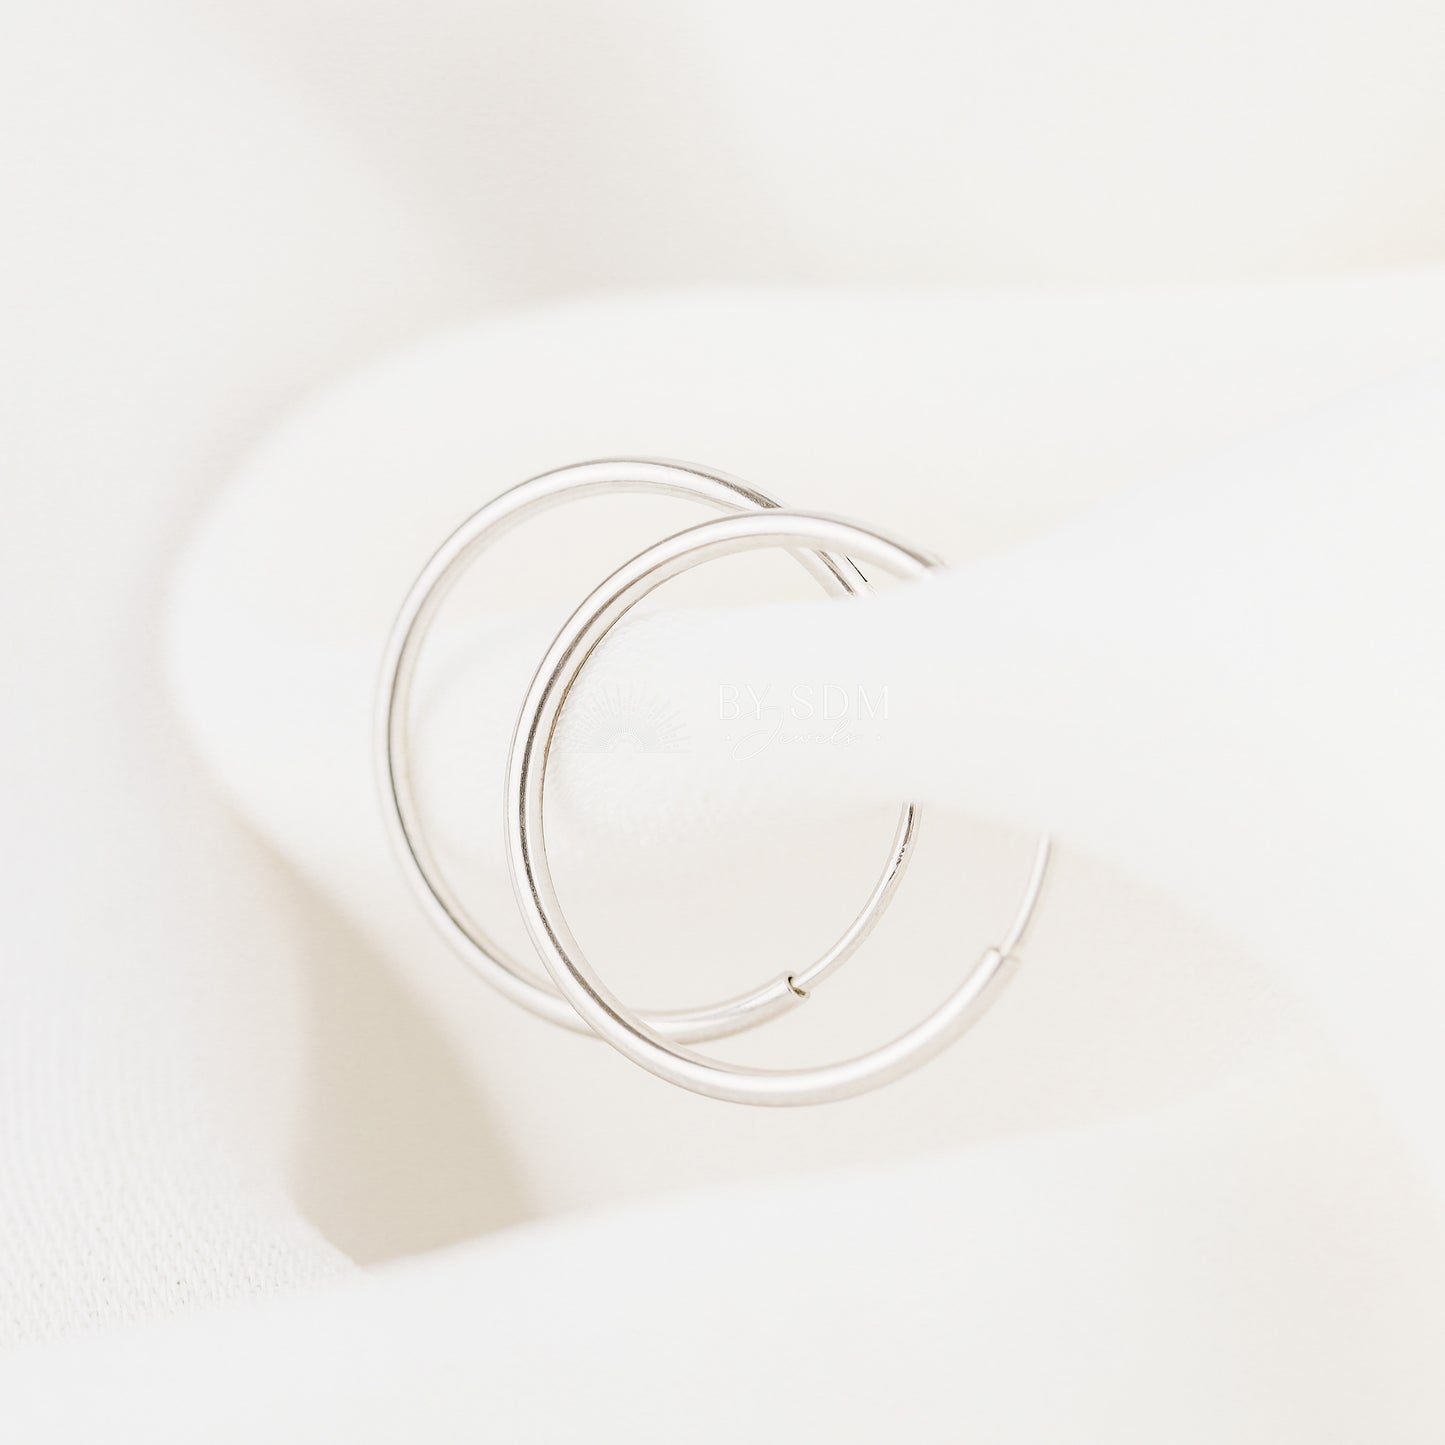 Thin Hoops Rings for Ear Piercings • Hoop With Hinge, 6, 8, 10, 12, 14, 16, 18mm, Silver • BYSDMJEWELS